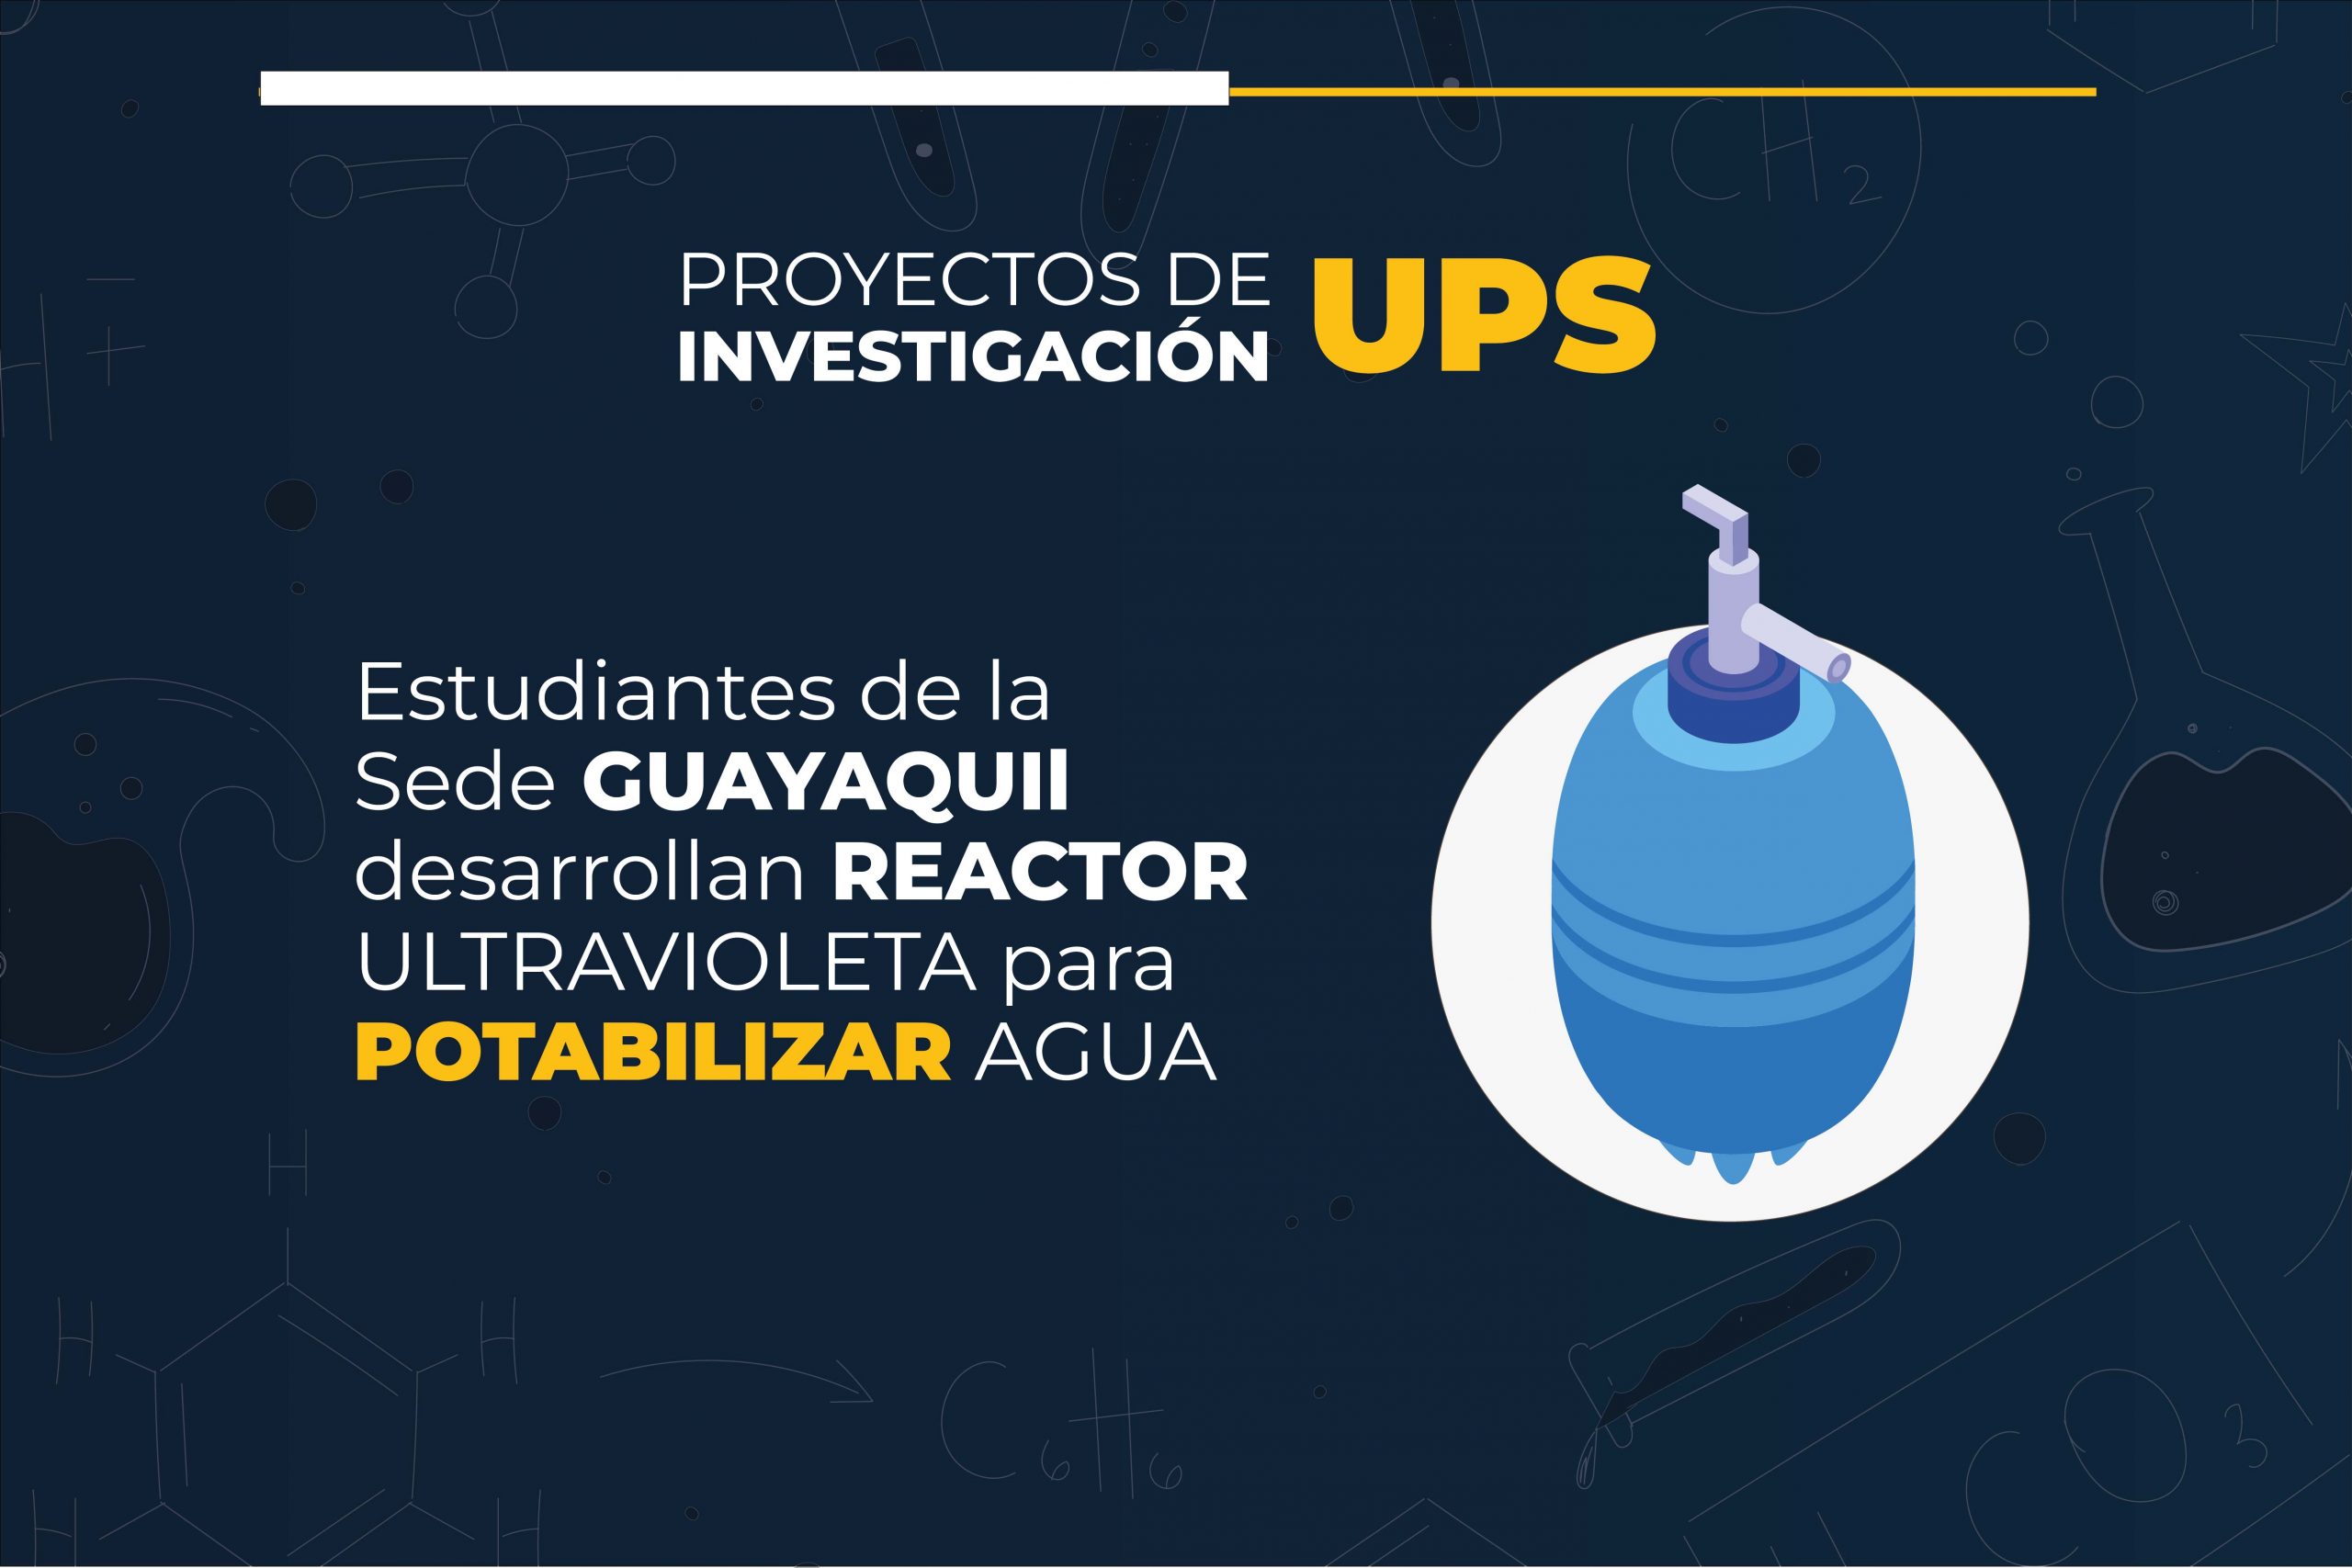 Estudiantes de la UPS sede Guayaquil desarrollan reactor ultravioleta para el saneamiento de agua